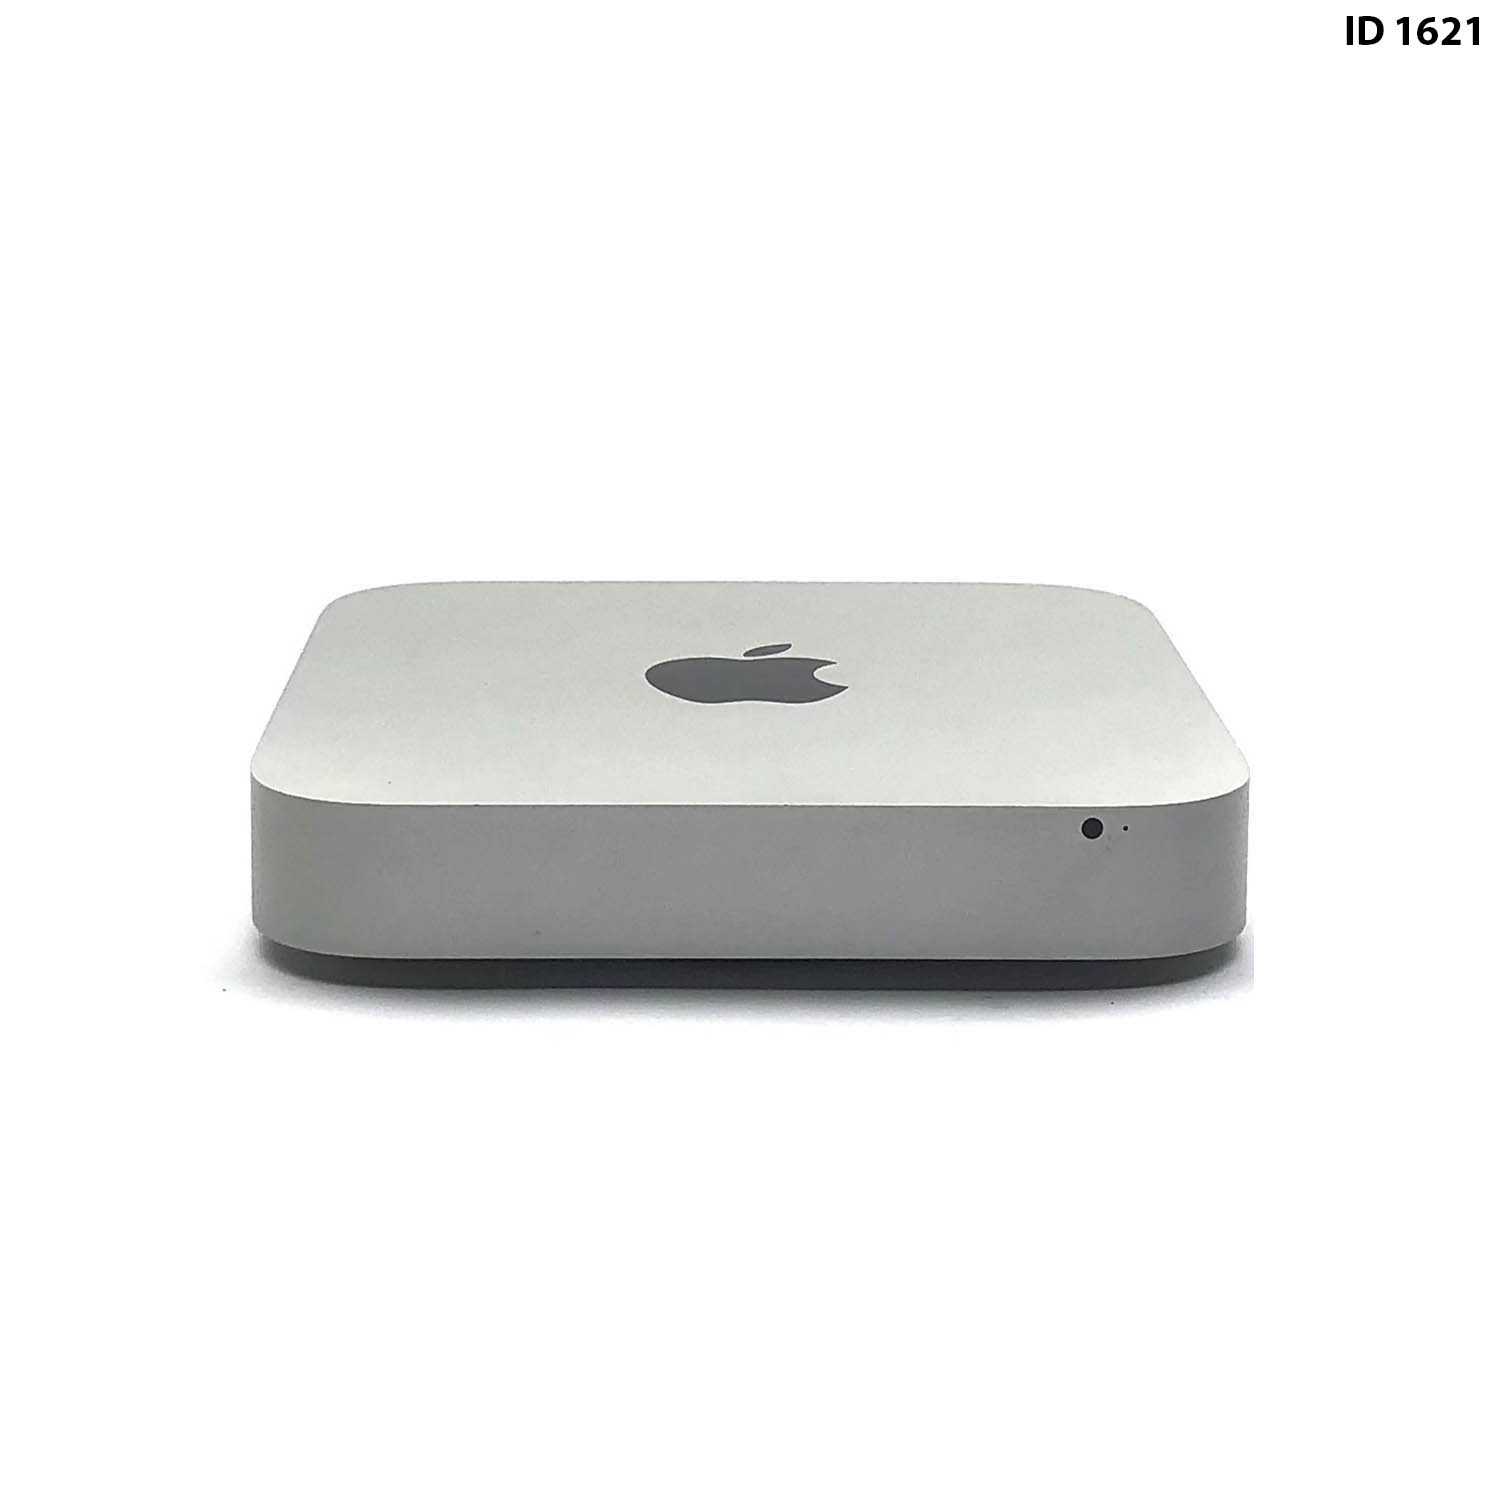 Mac Mini i5 2.5Ghz 8GB 500GB HD MD387LL/A Seminovo